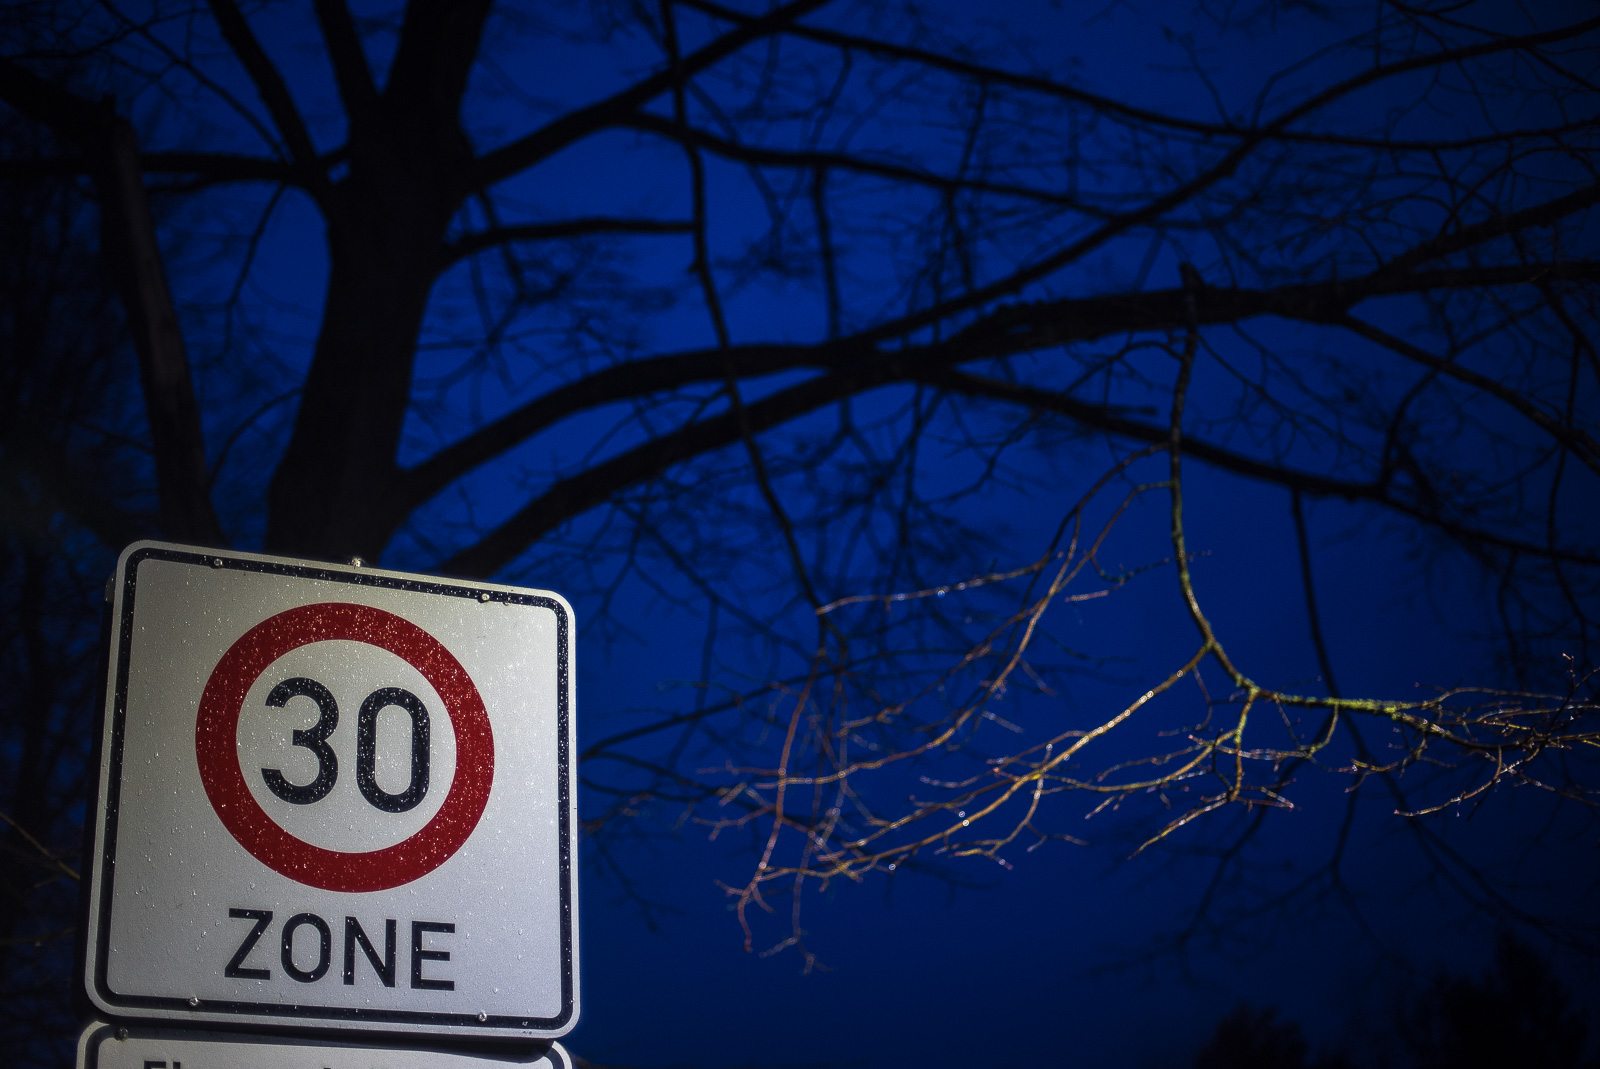 Nachtszene (Himmel, Baum) mit beleuchtetem Verkehrsschild "30 Zone"